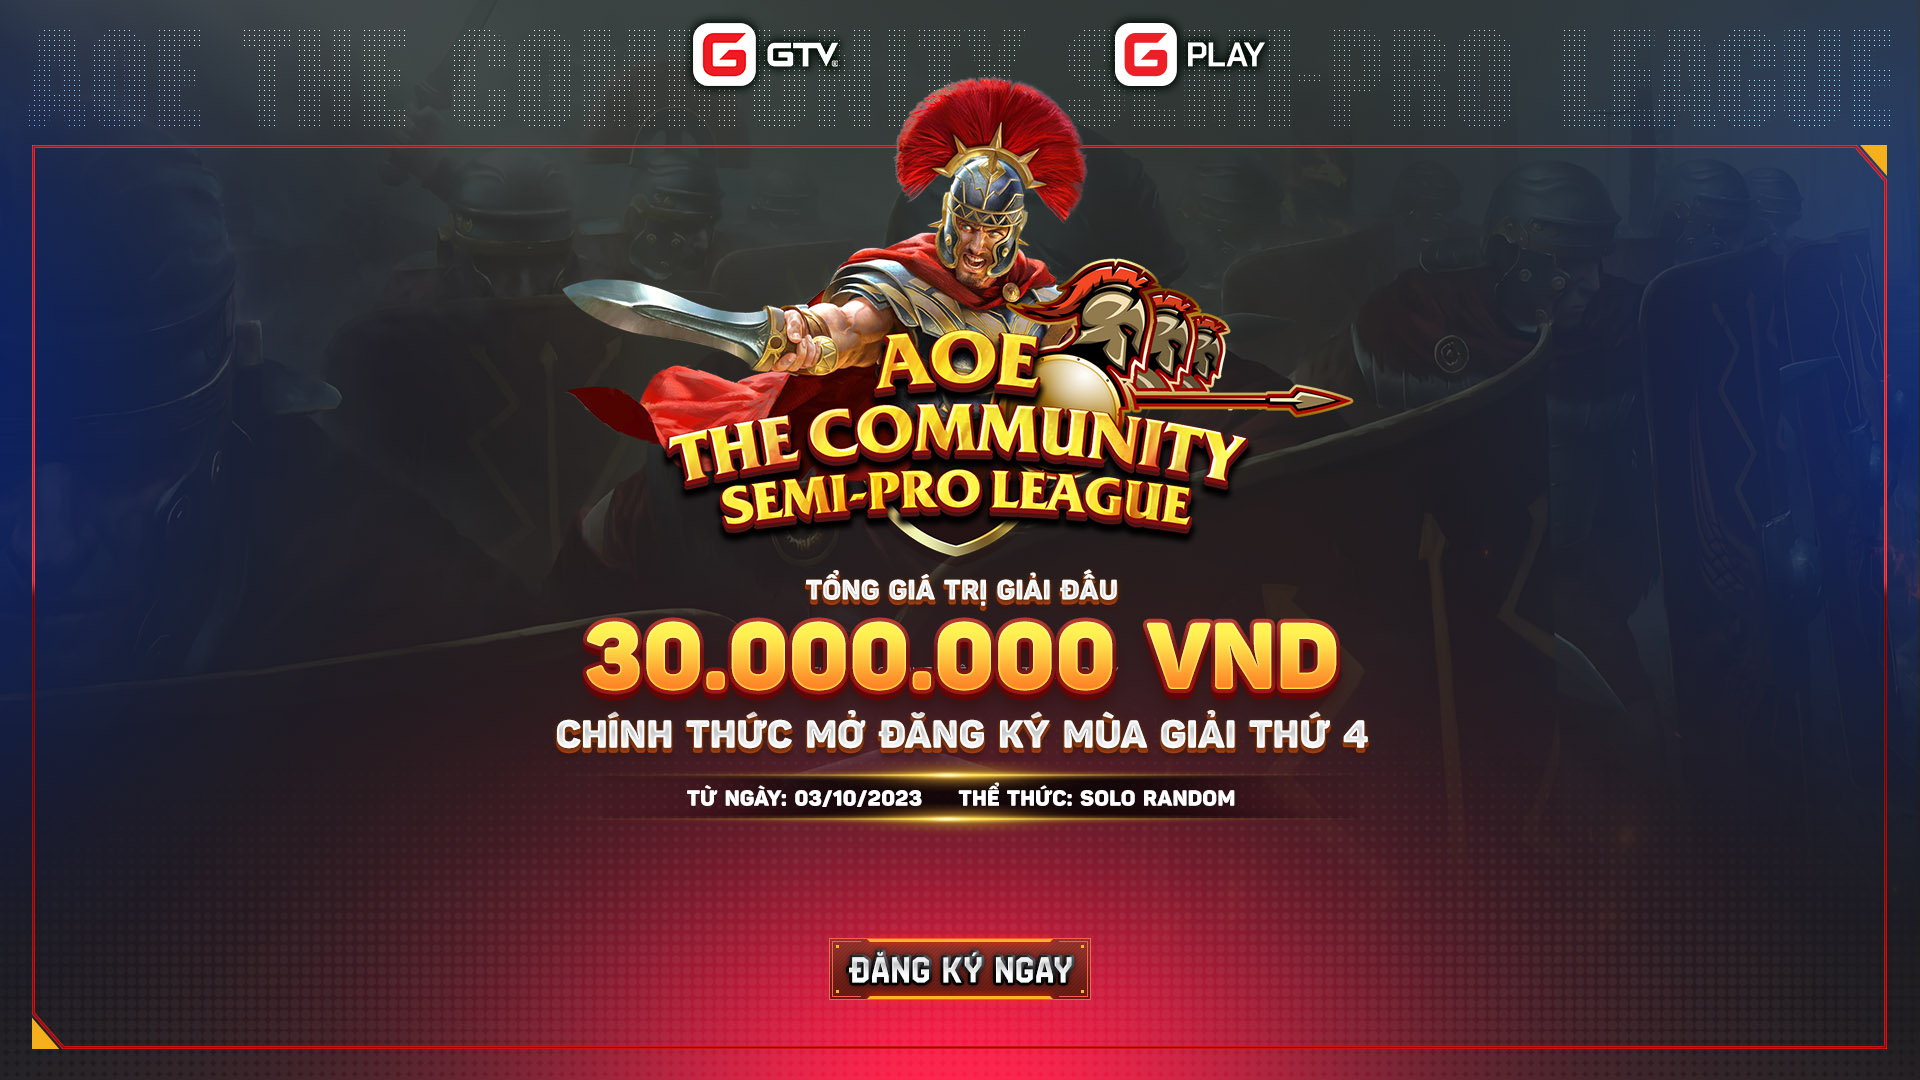 Chính thức mở đăng ký giải đấu AoE bán chuyên The Community Semi-Pro League mùa 4